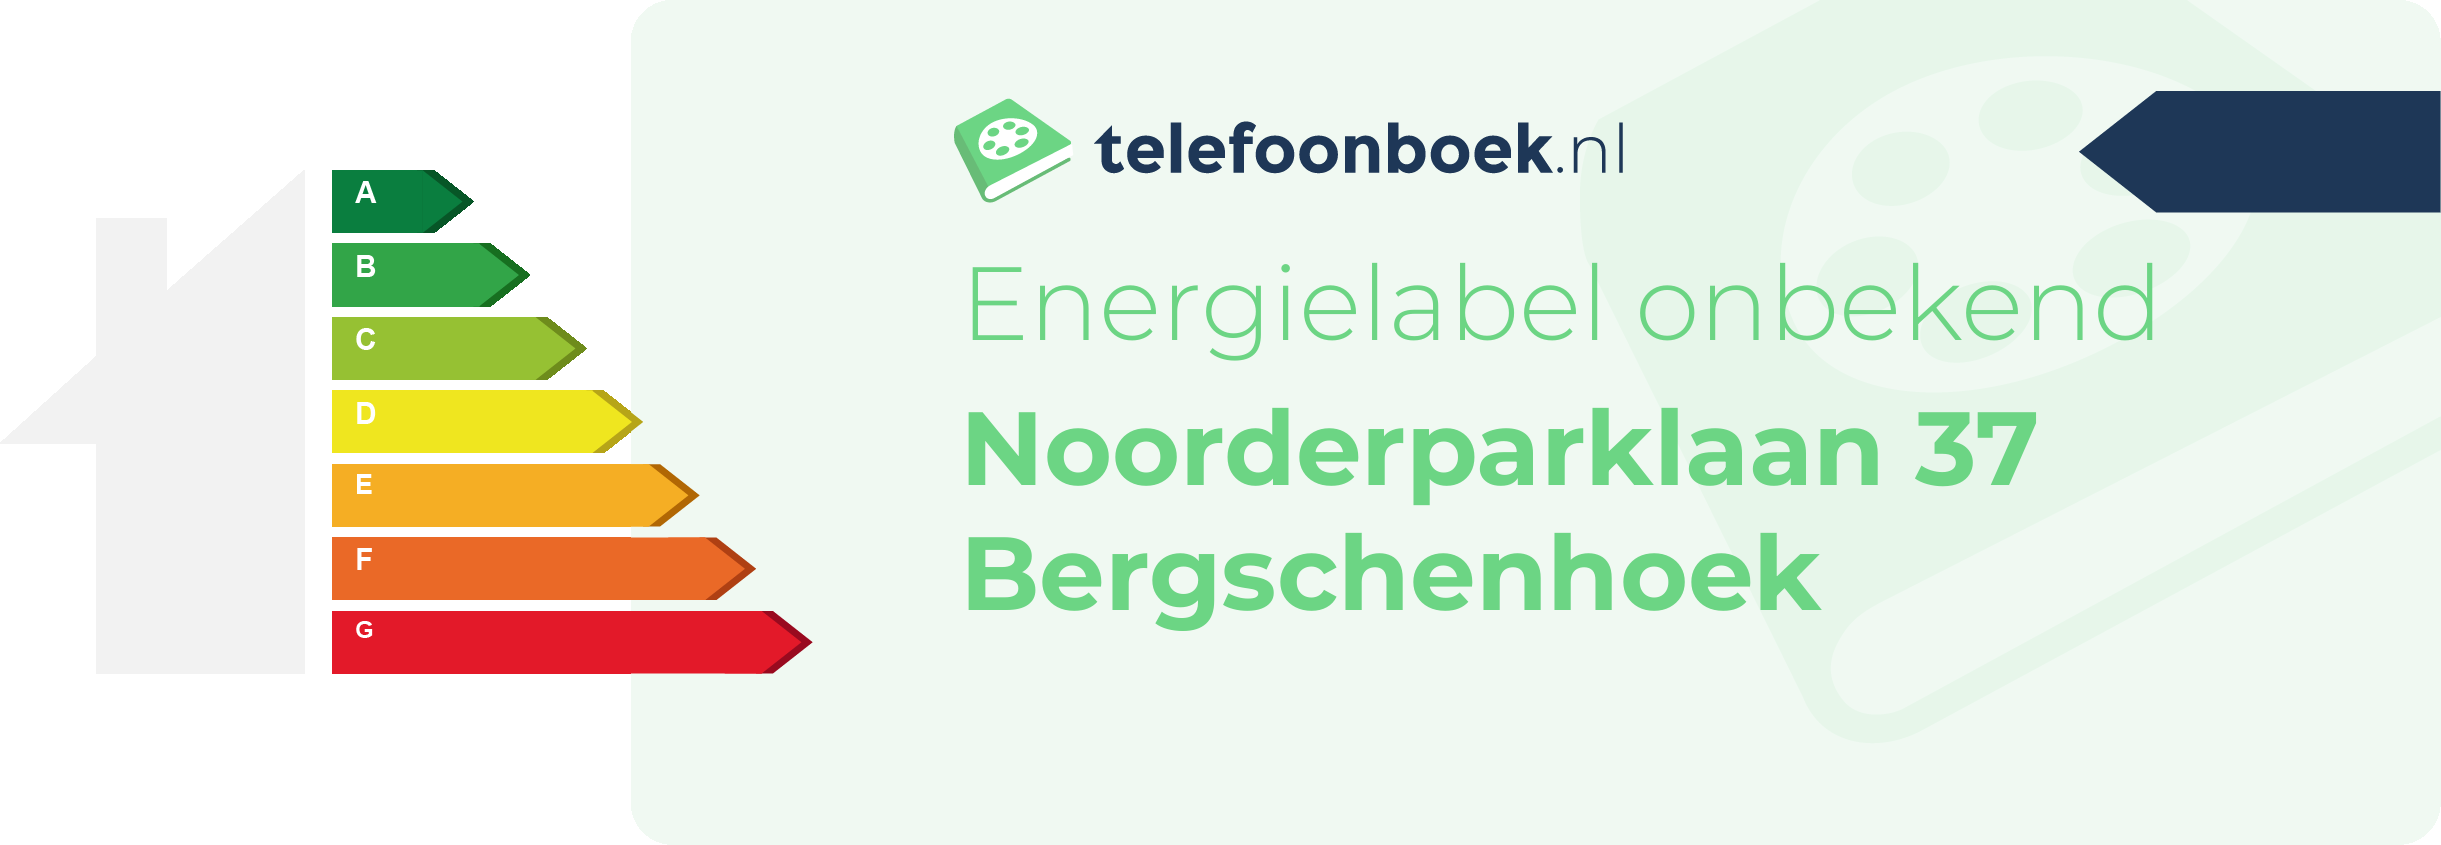 Energielabel Noorderparklaan 37 Bergschenhoek